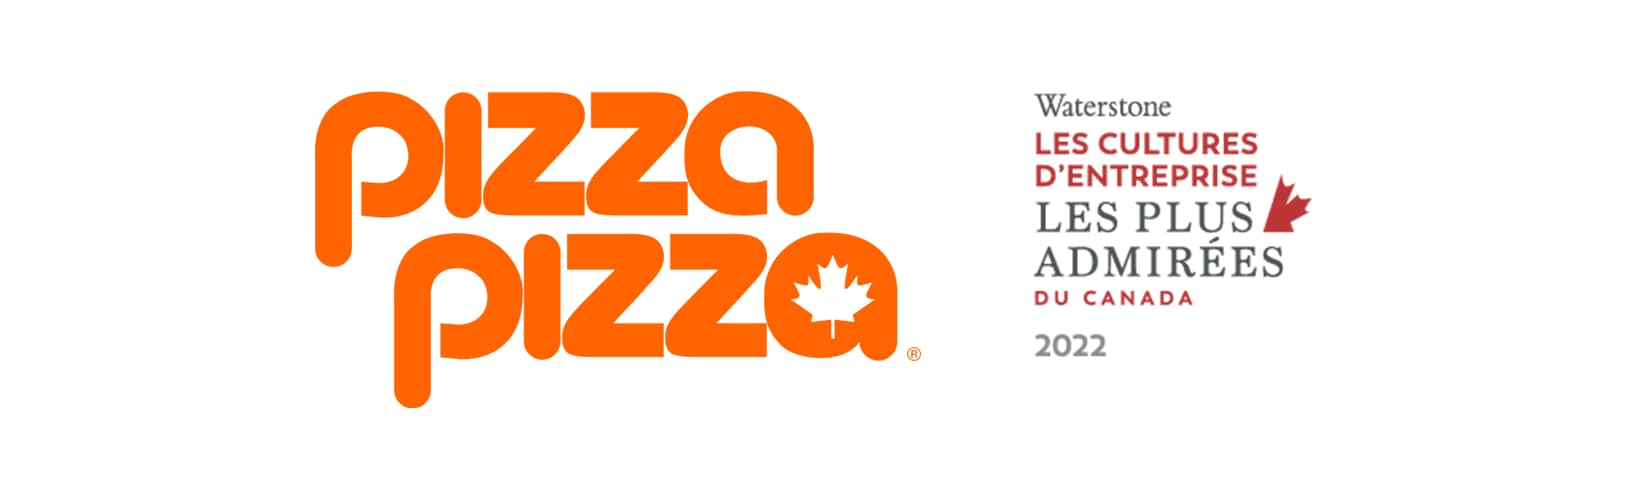 Les cultures d'entreprise les plus admirées du Canada - Pizza Pizza